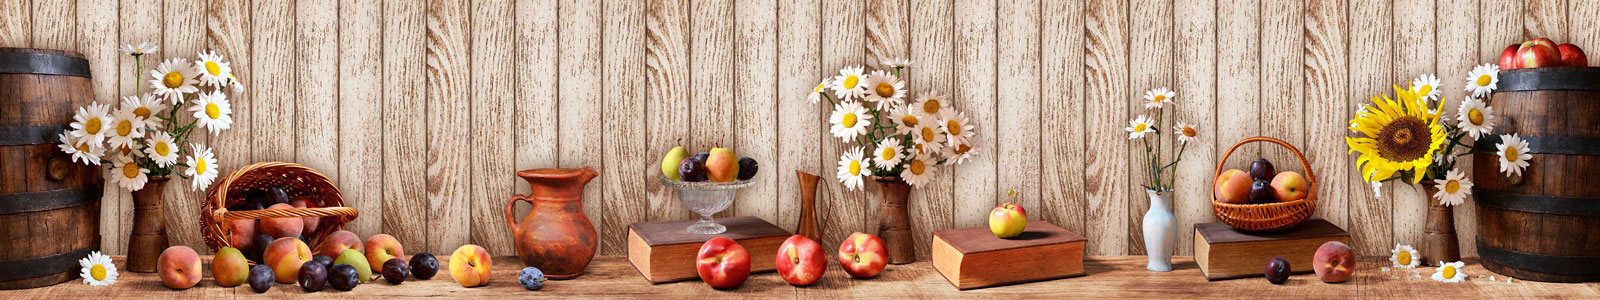 №5023 - Летний натюрморт с фруктами и цветами на фоне деревянной стены